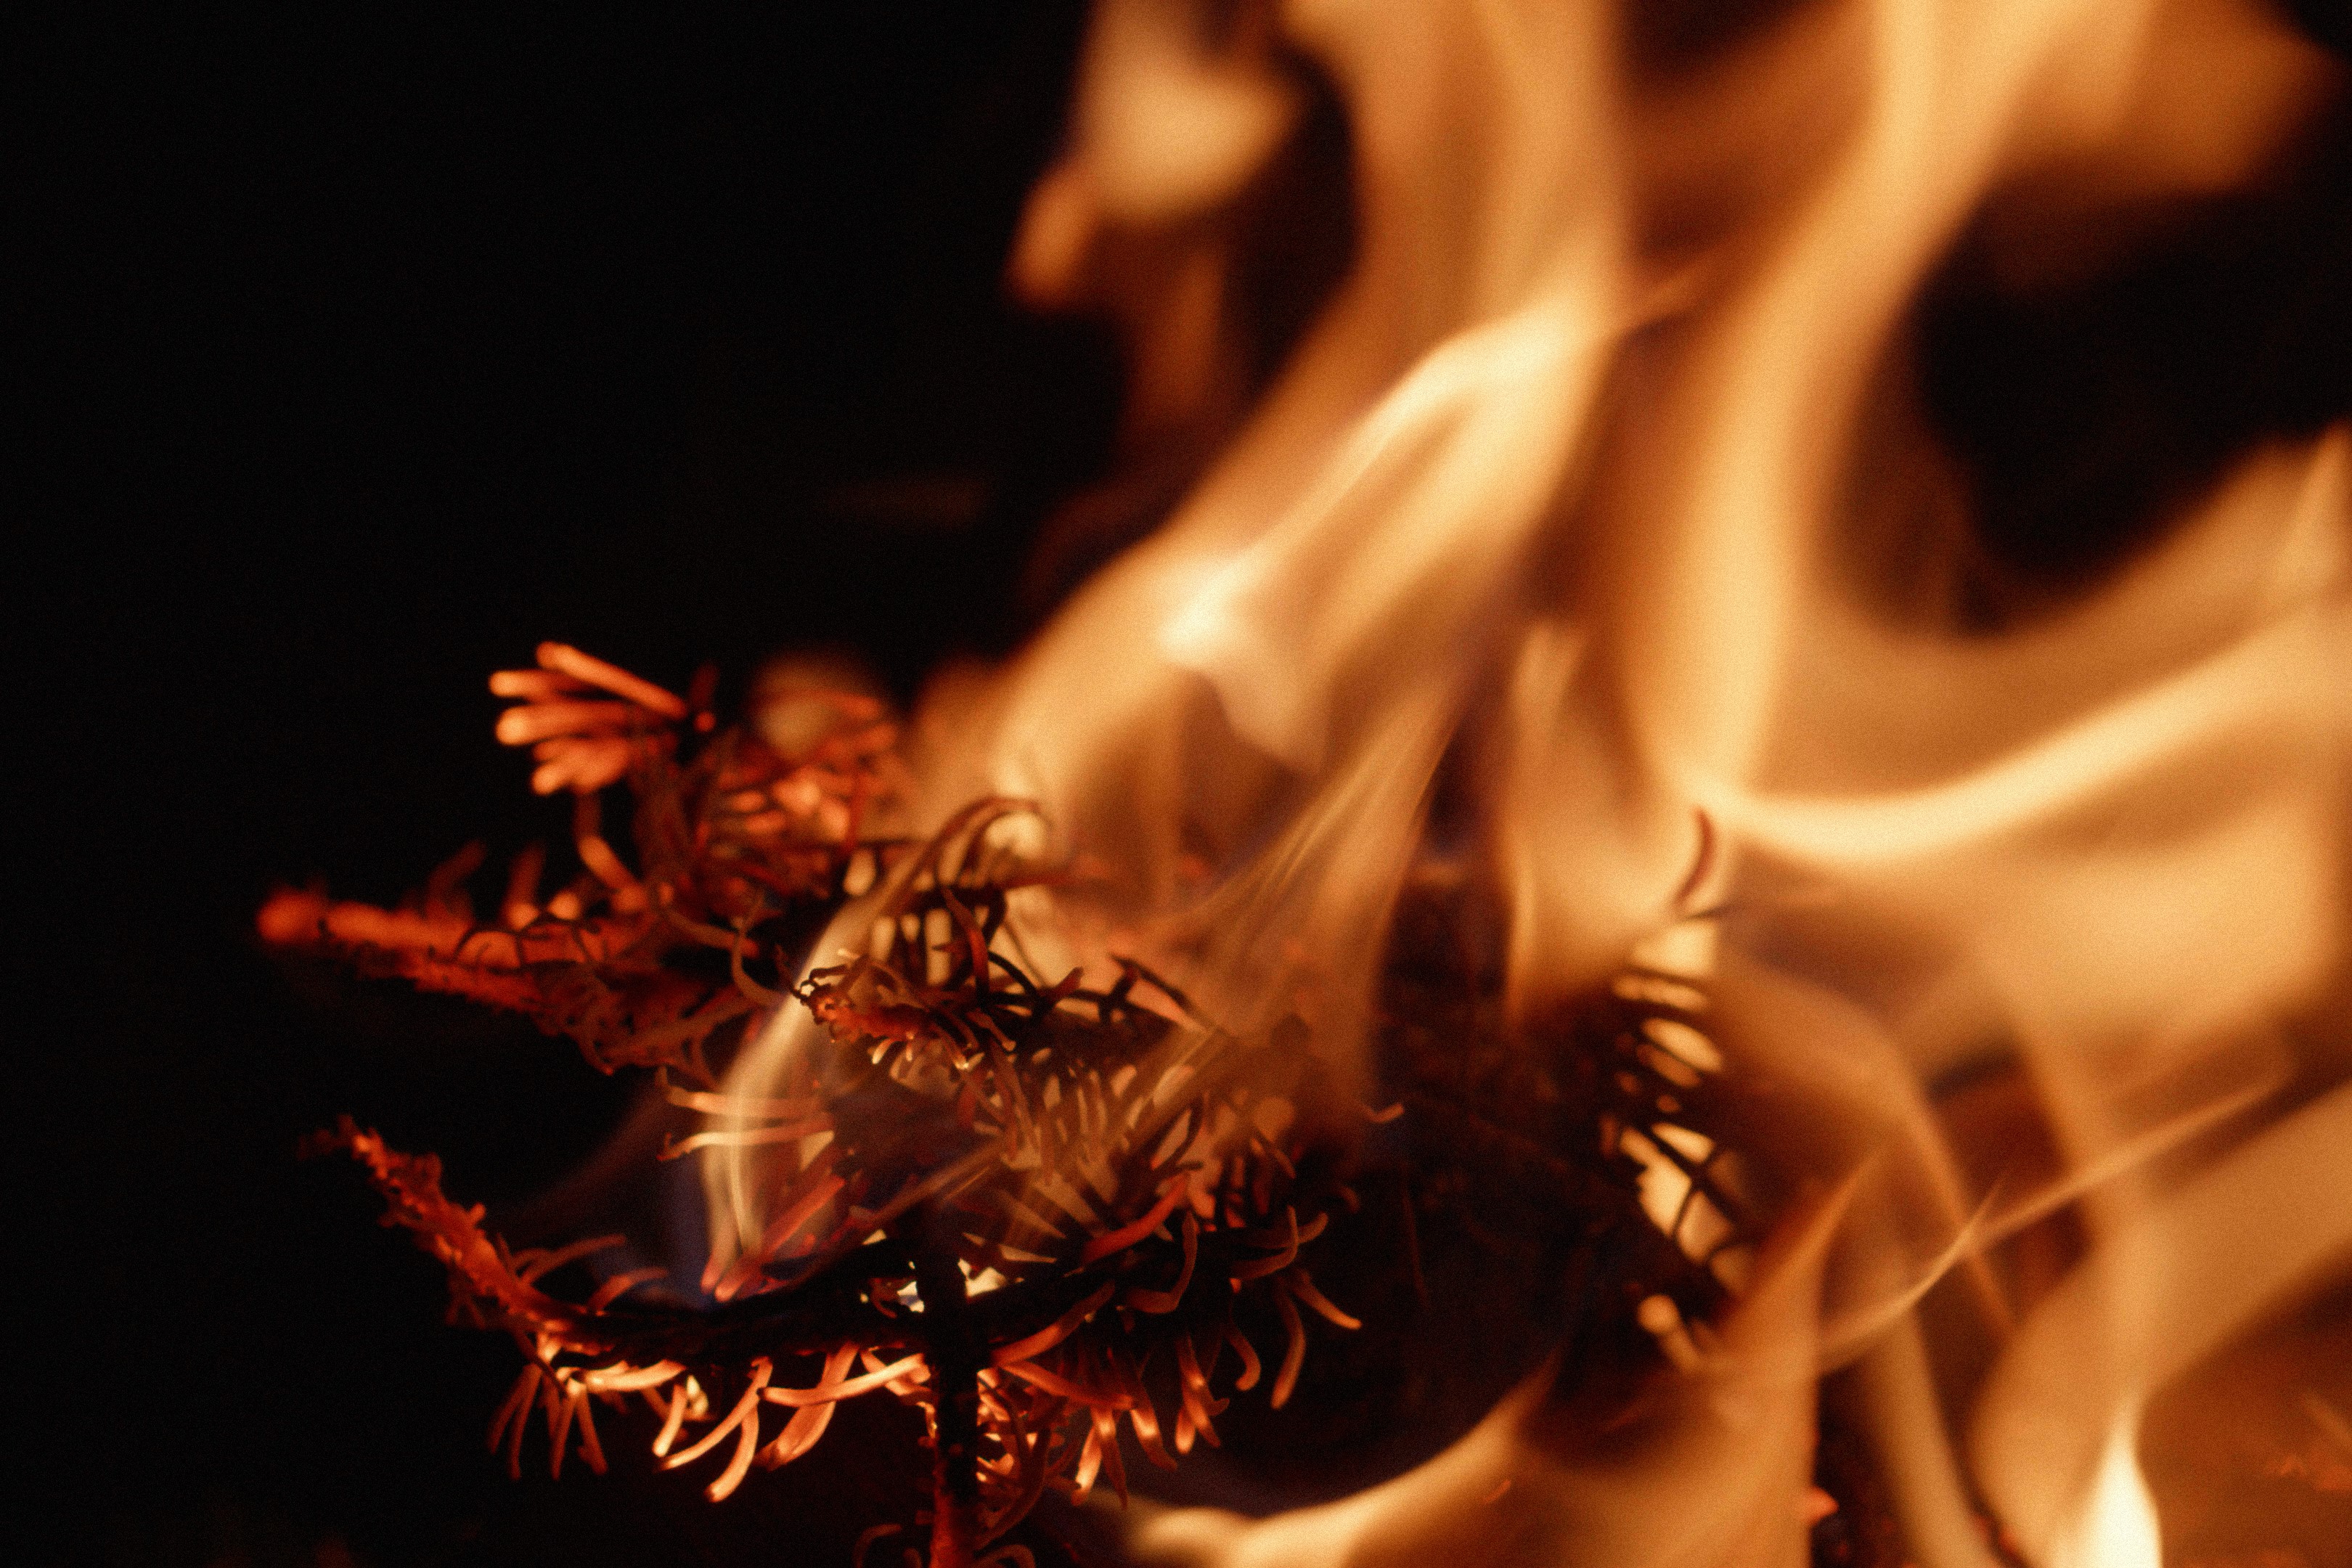 Balsalm fir on fire